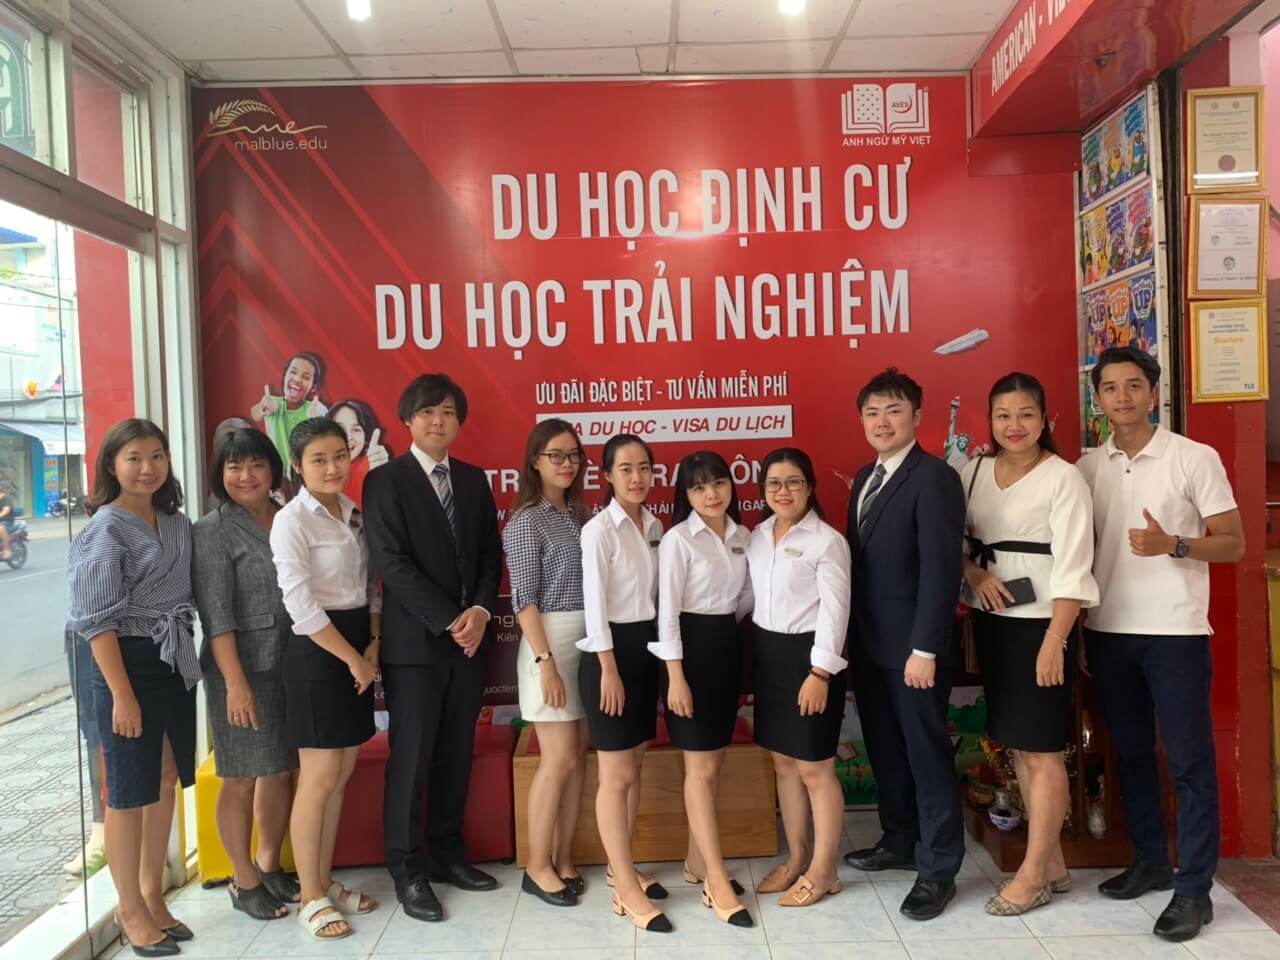 Trung tâm Ngoại ngữ Quốc tế Việt - Anh